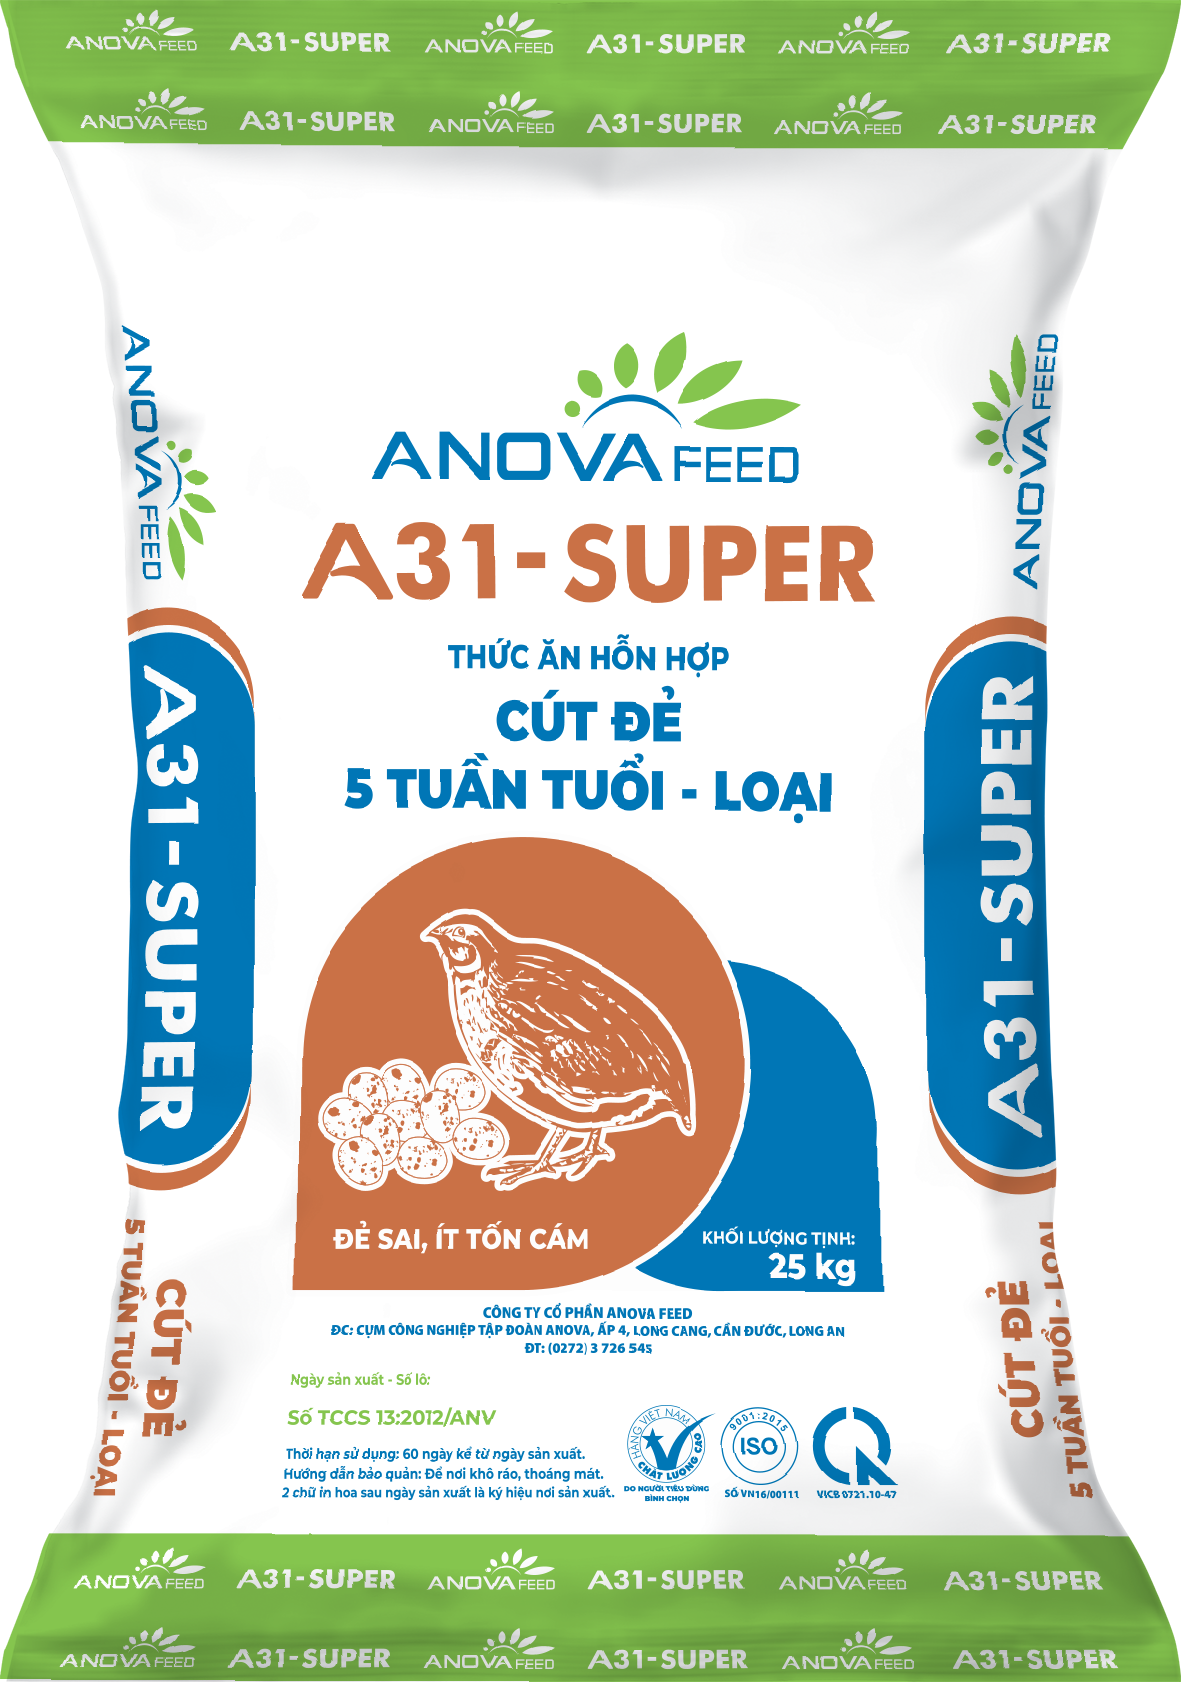 Thức ăn hỗn hợp CÚT ĐẺ 5 tuần tuổi - loại A31 - Super